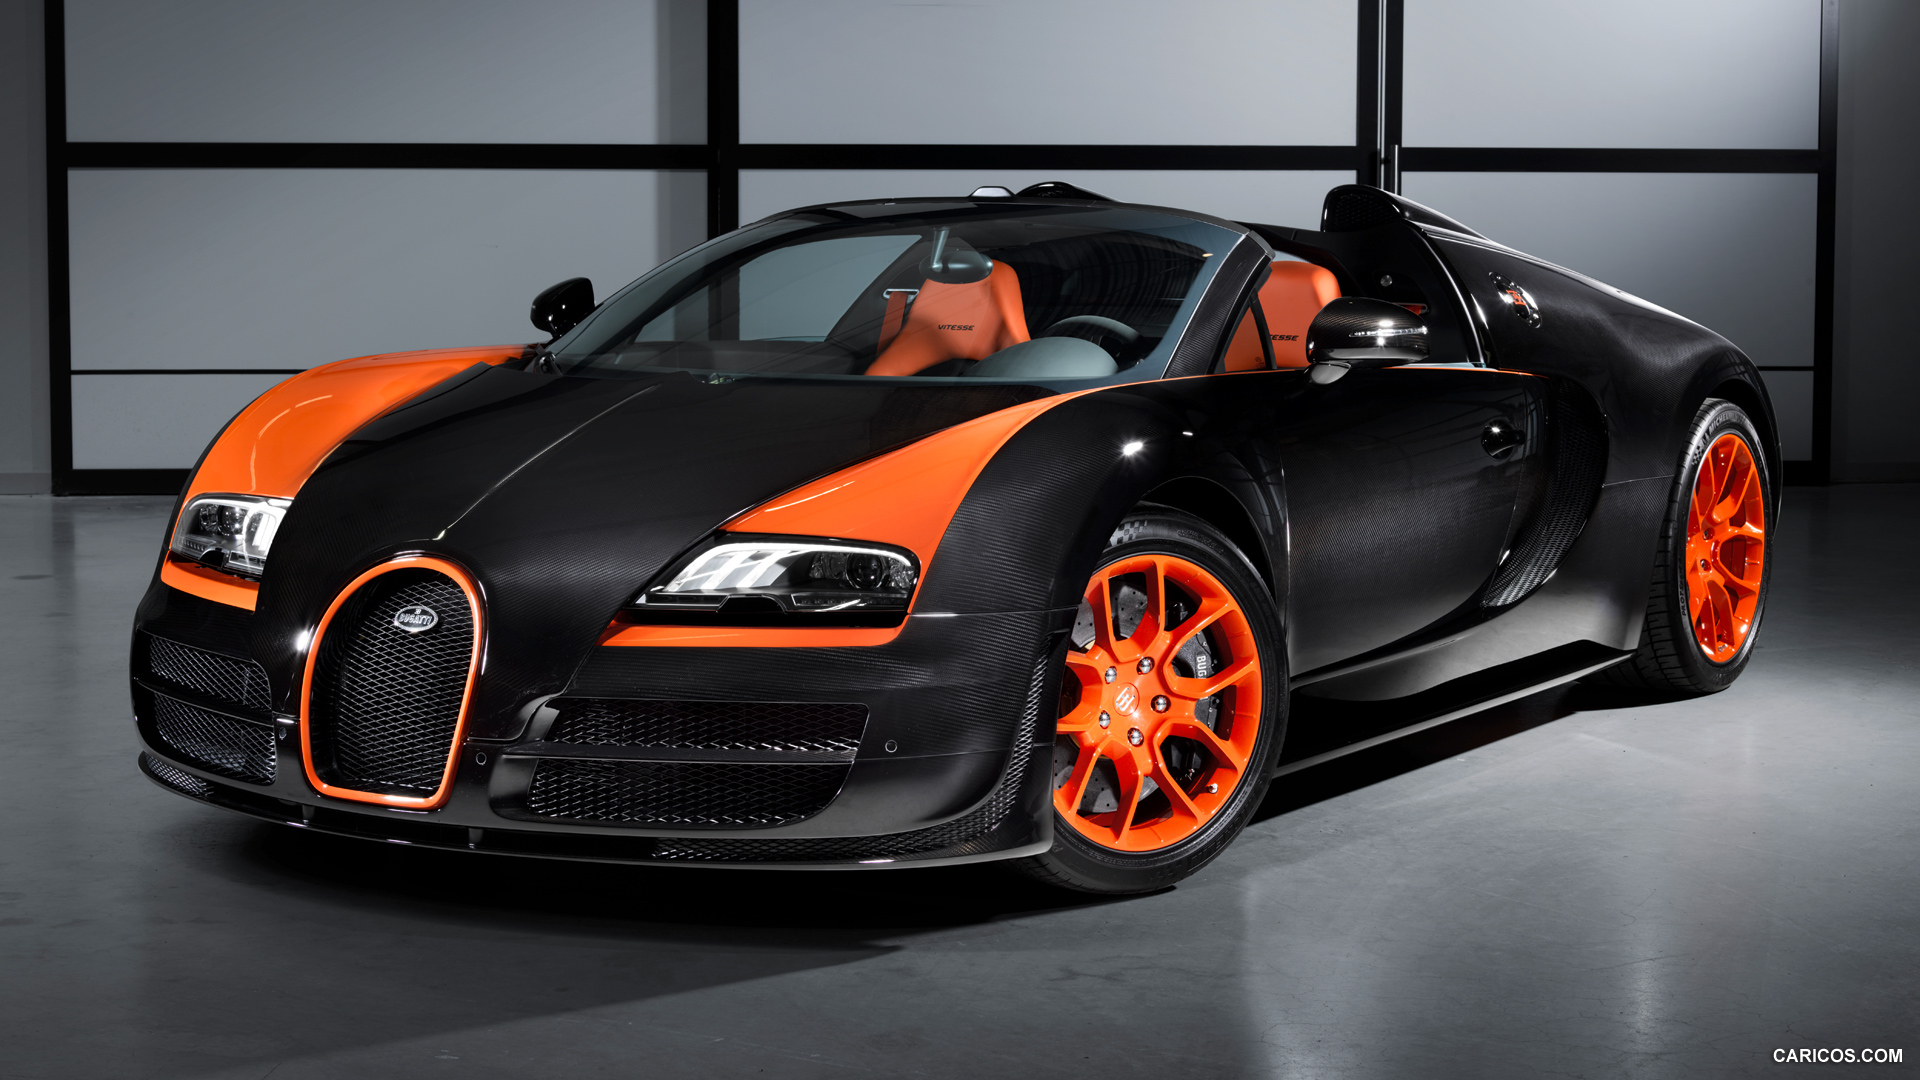 Bugatti Veyron 16.4 Grand Sport HD wallpapers, Desktop wallpaper - most viewed